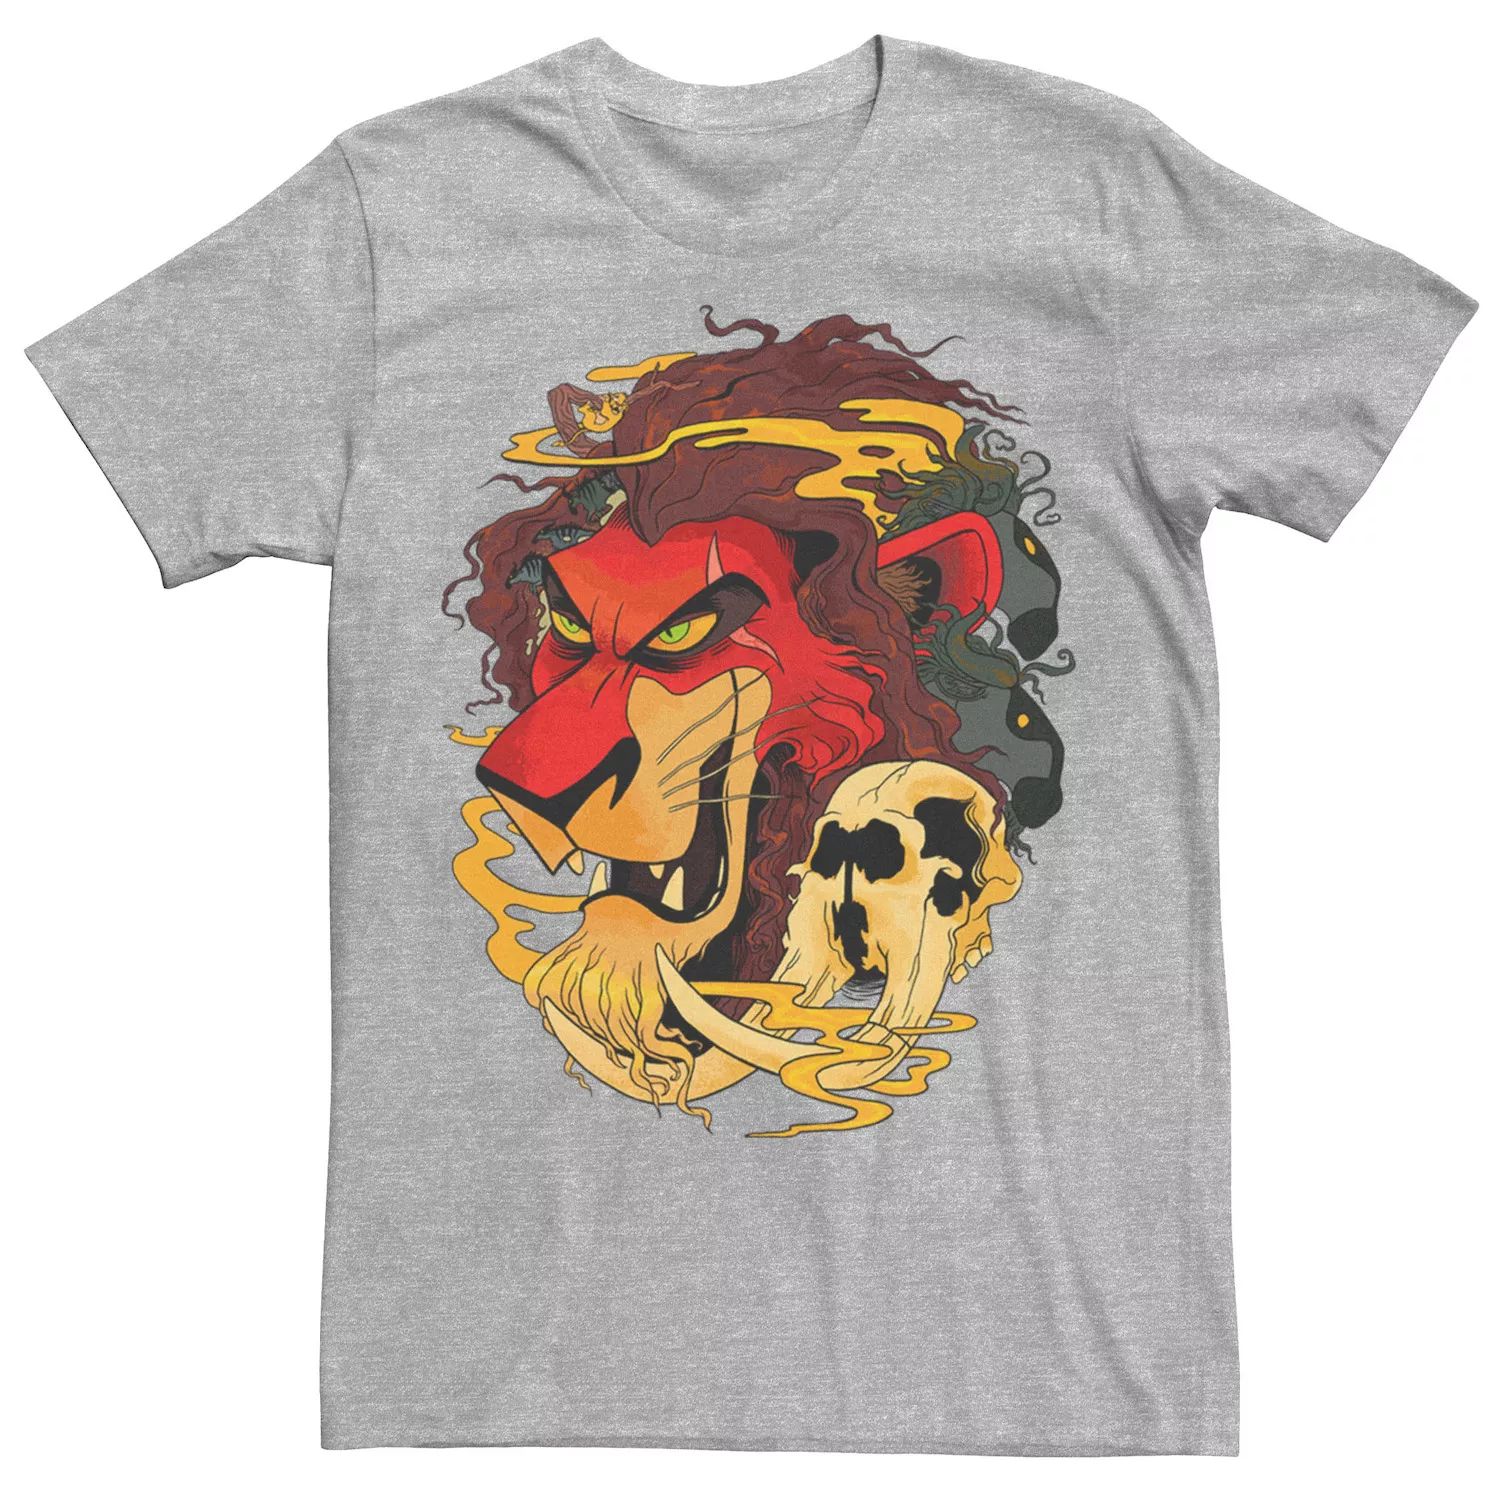 Мужская футболка Disney The Lion King Scar Head Shot футболка lion king scar unleashed disney черный